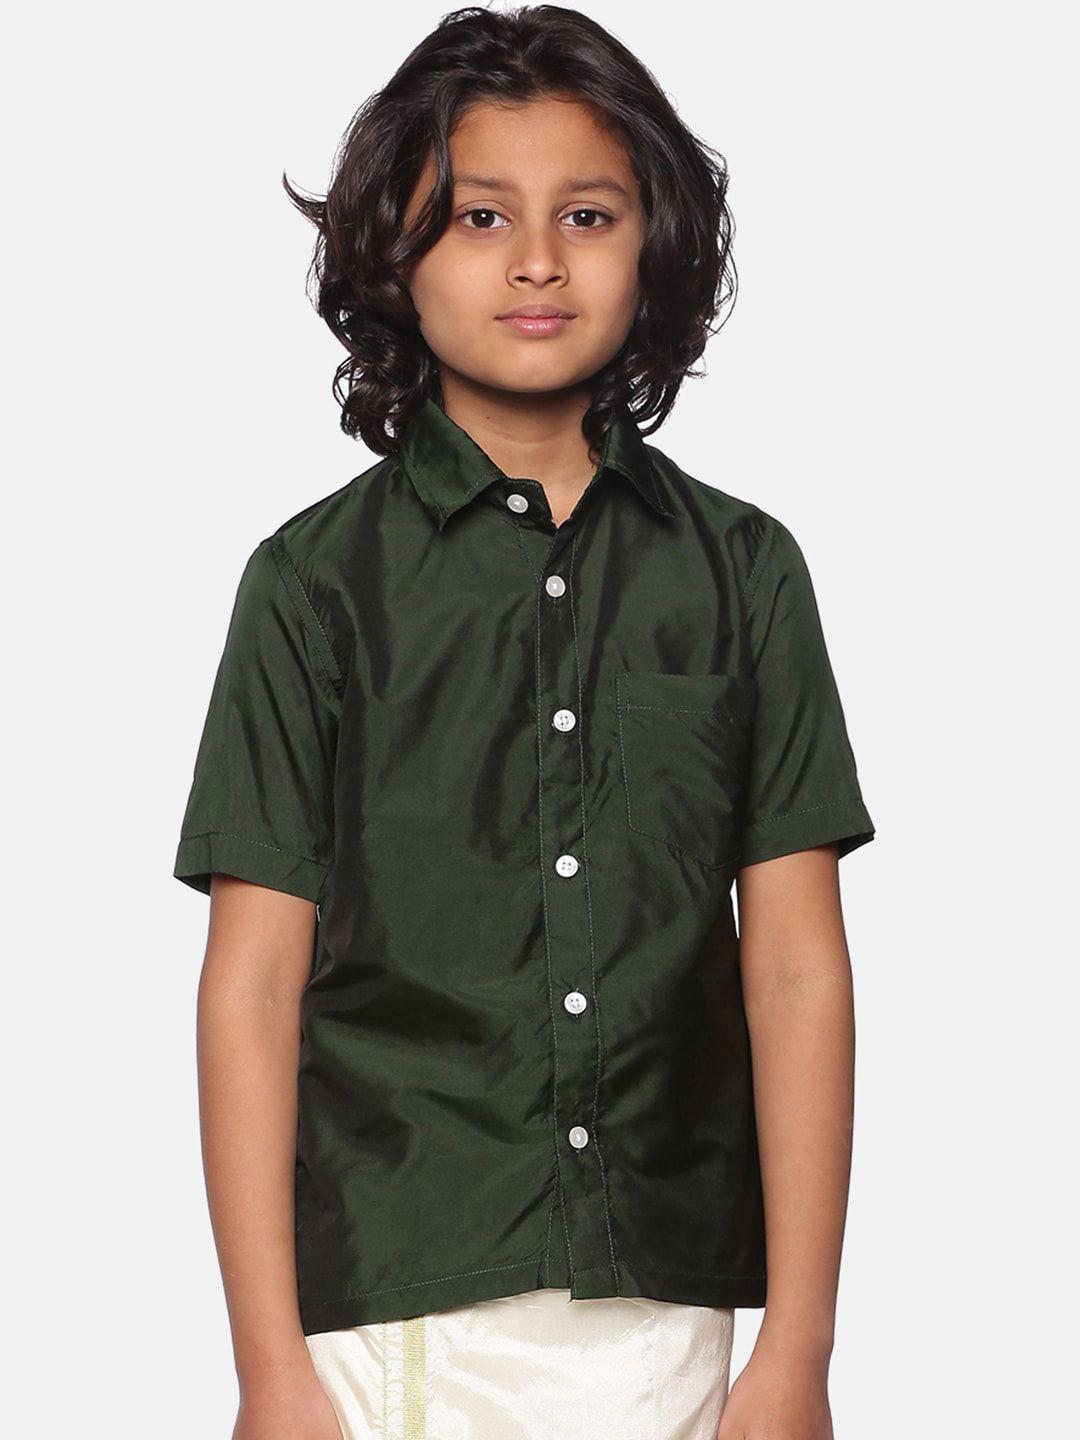 sethukrishna-boys-spread-collar-casual-shirt